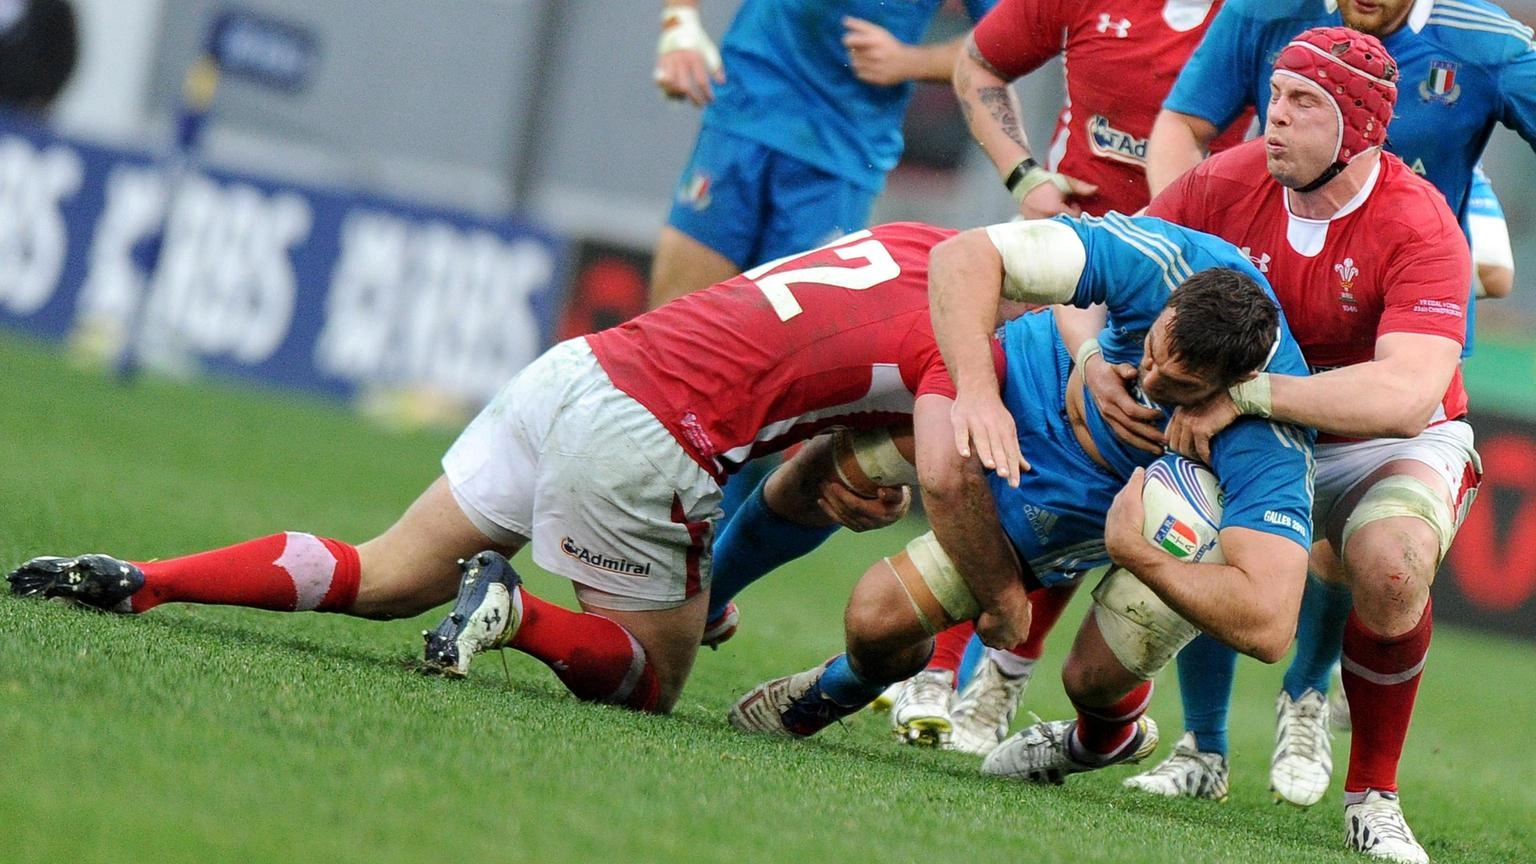 Rugby: Italia sale nel ranking internazionale, ora è ottava